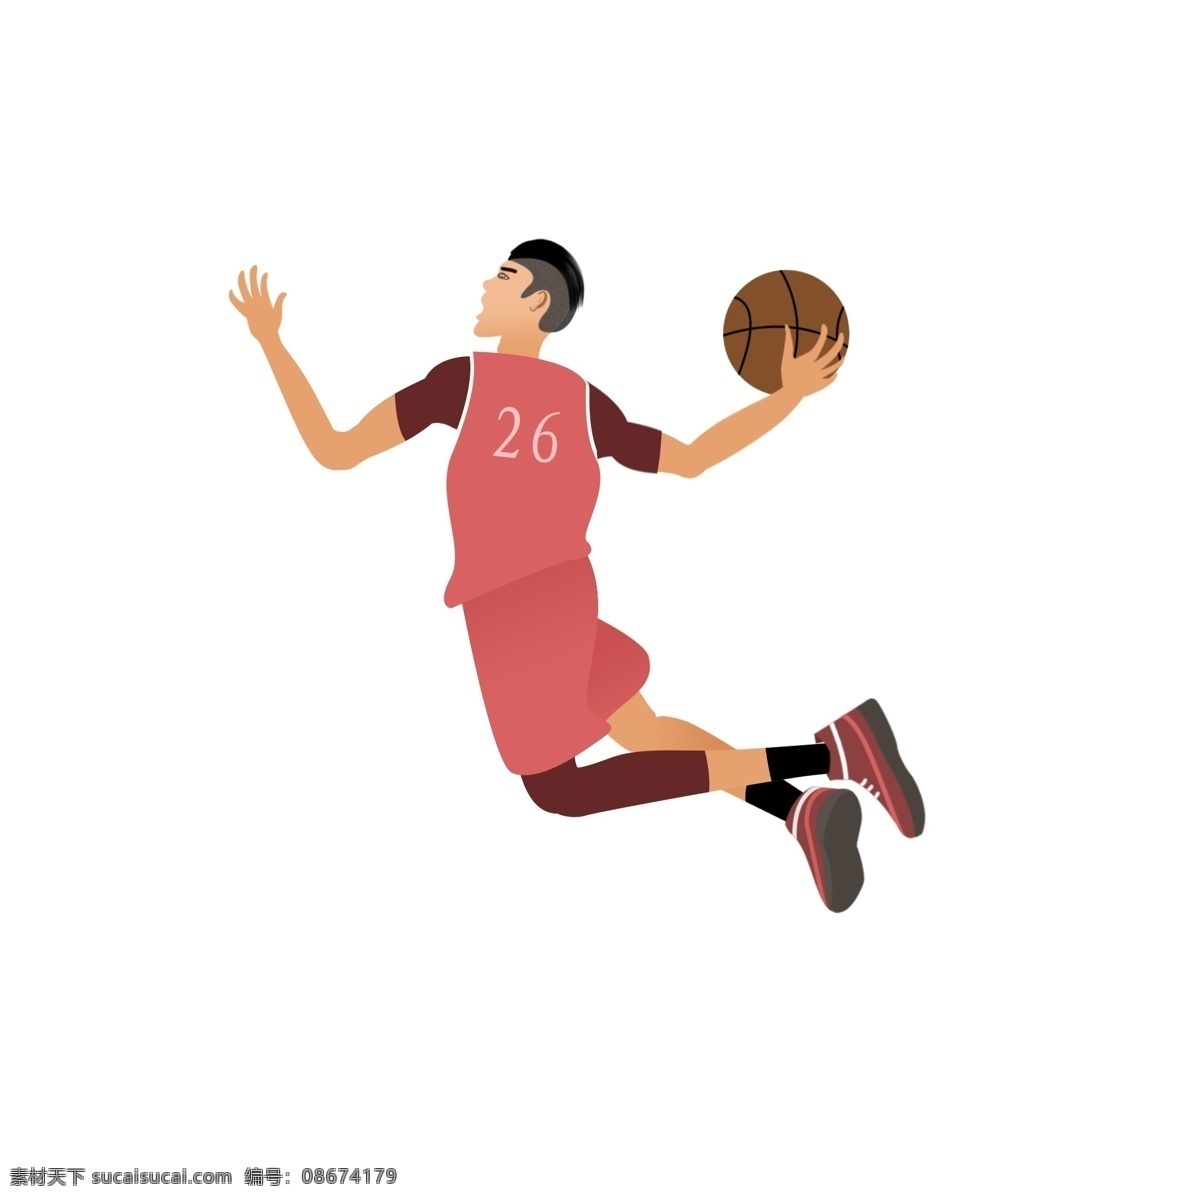 国际 篮球 日 起跳 扣篮 球员 卡通人物 篮球比赛 体育竞技